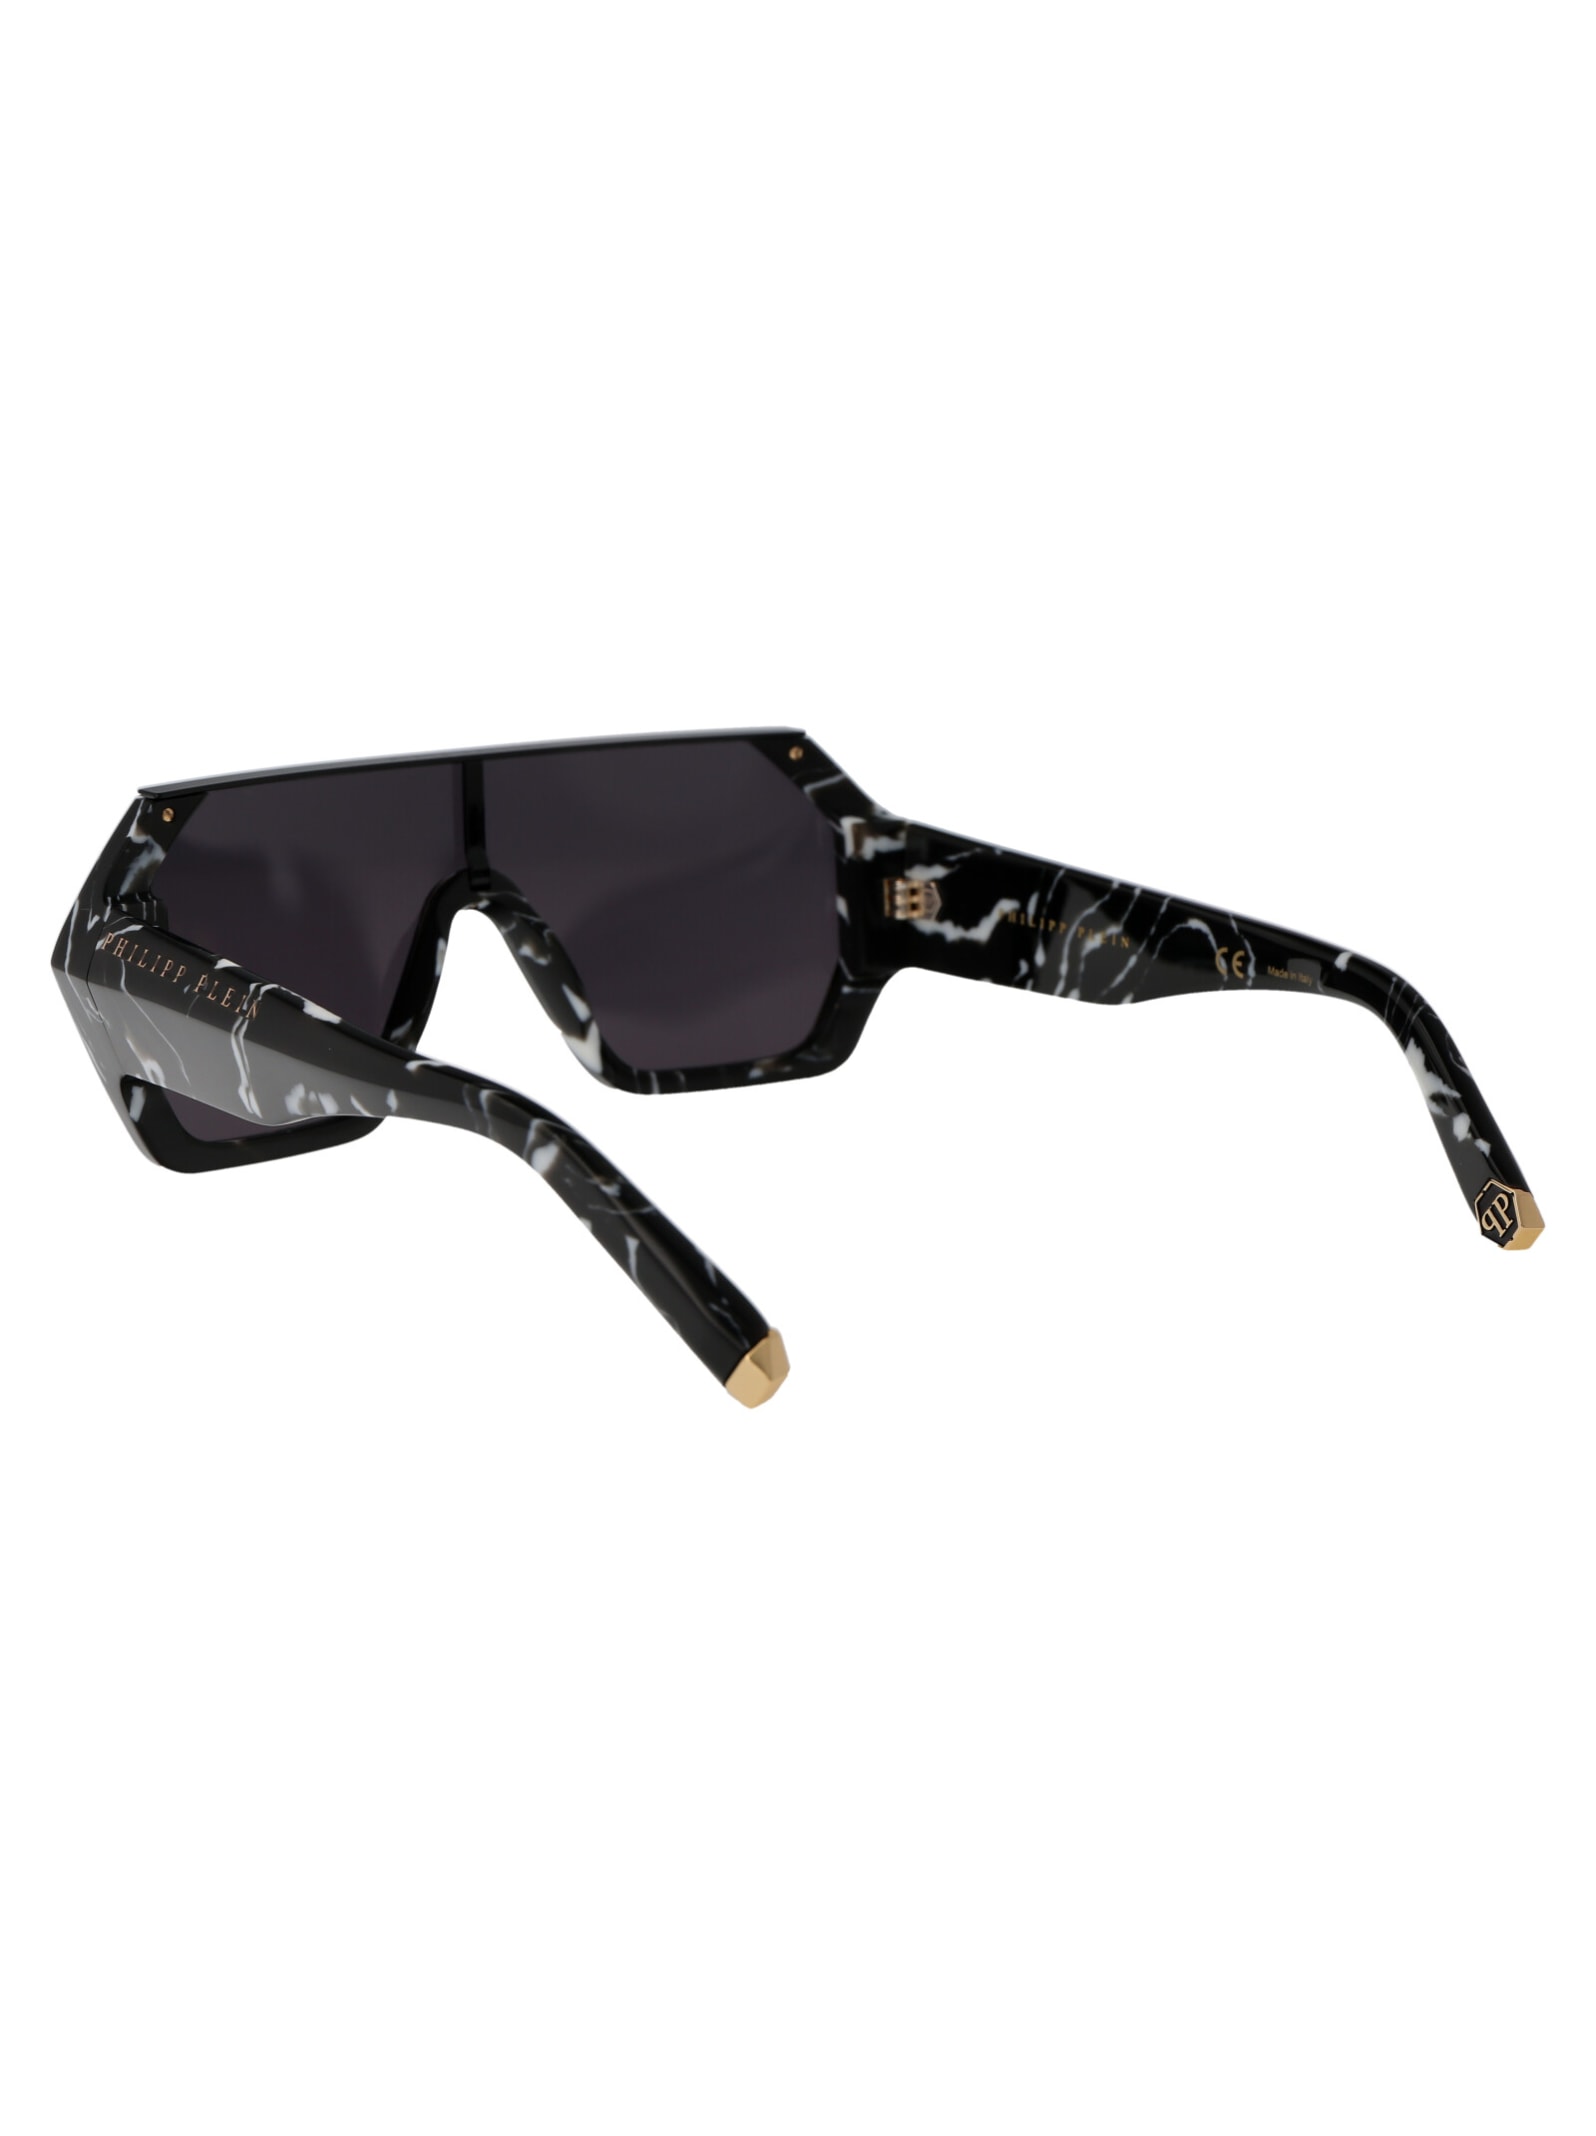 Shop Philipp Plein Spp047 Sunglasses In 0z21 Nero Marmorizzato